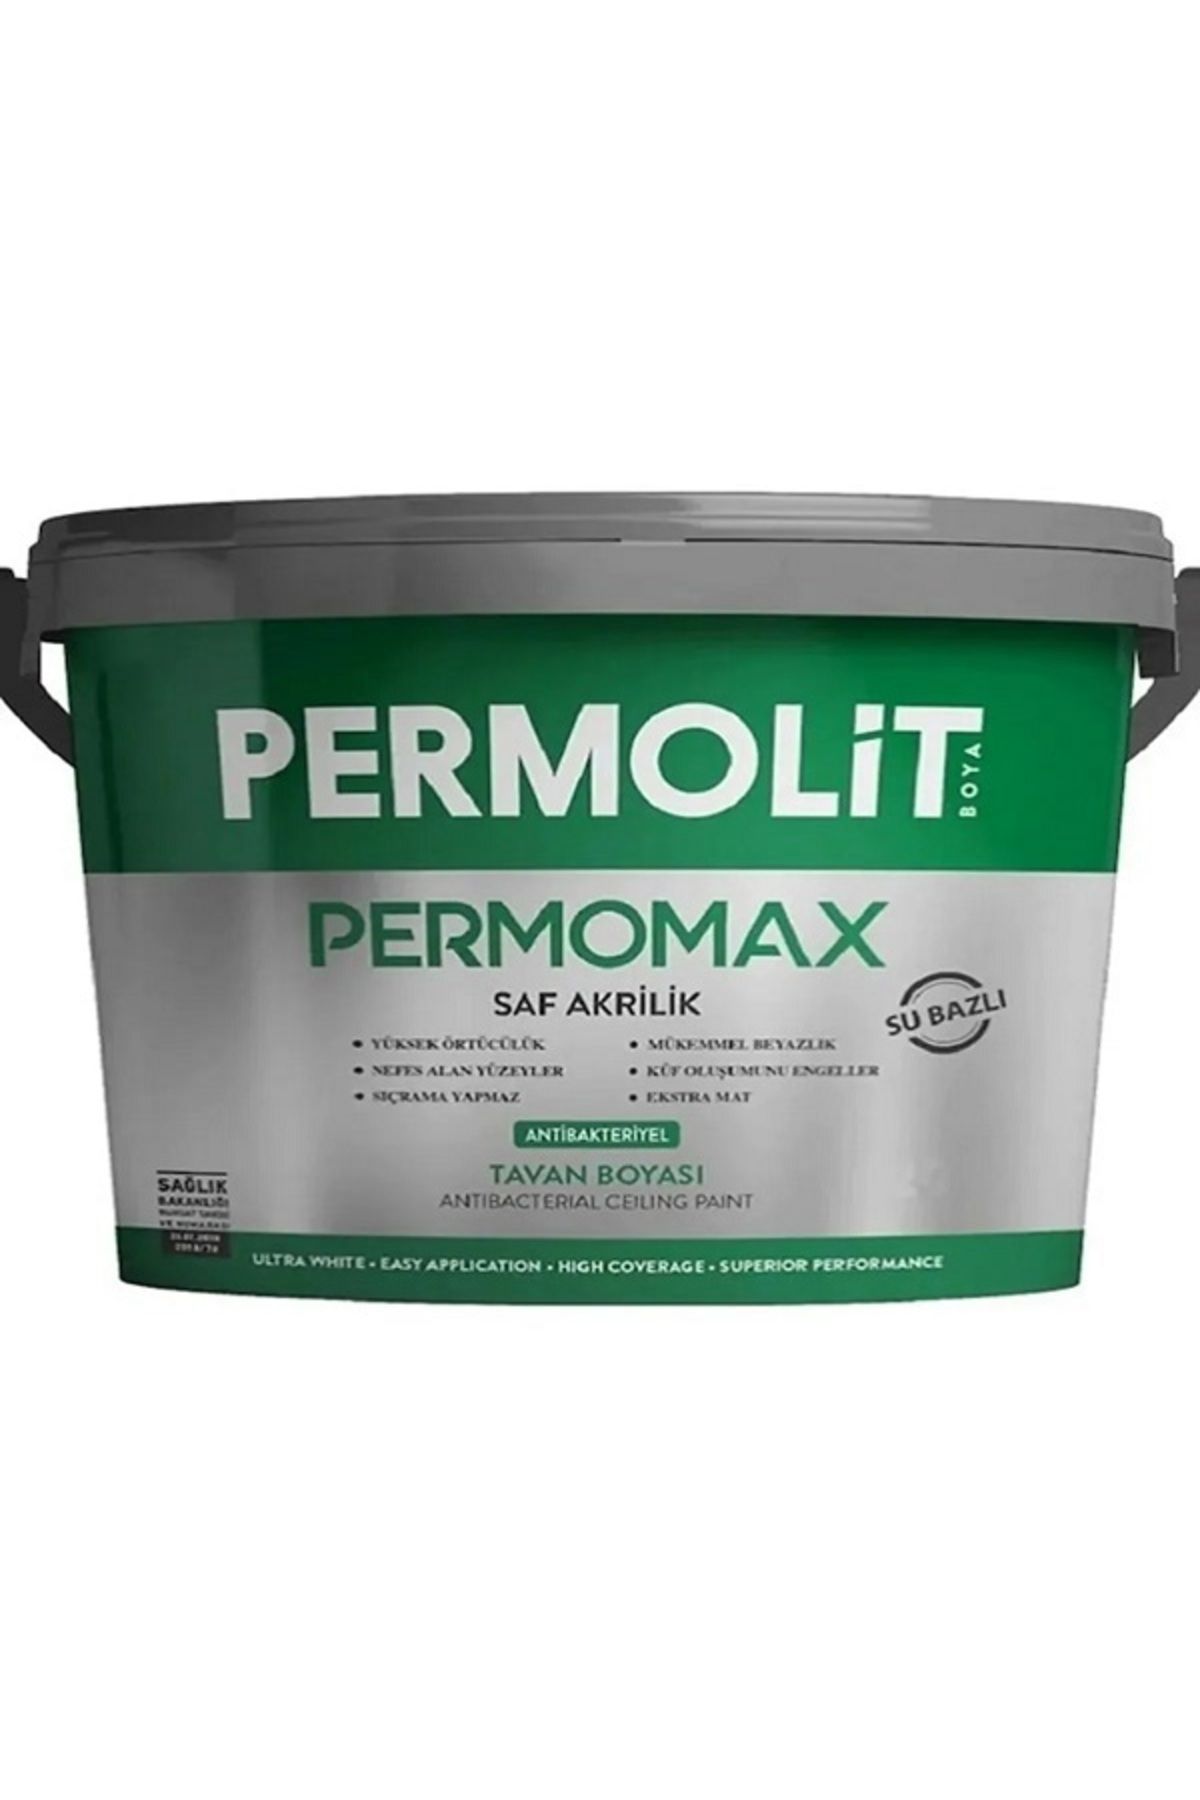 Permolit Permomax Antibakteriyel Küf Ve Kararmalara Karşı Rutubet Önleyici Tavan Boyası